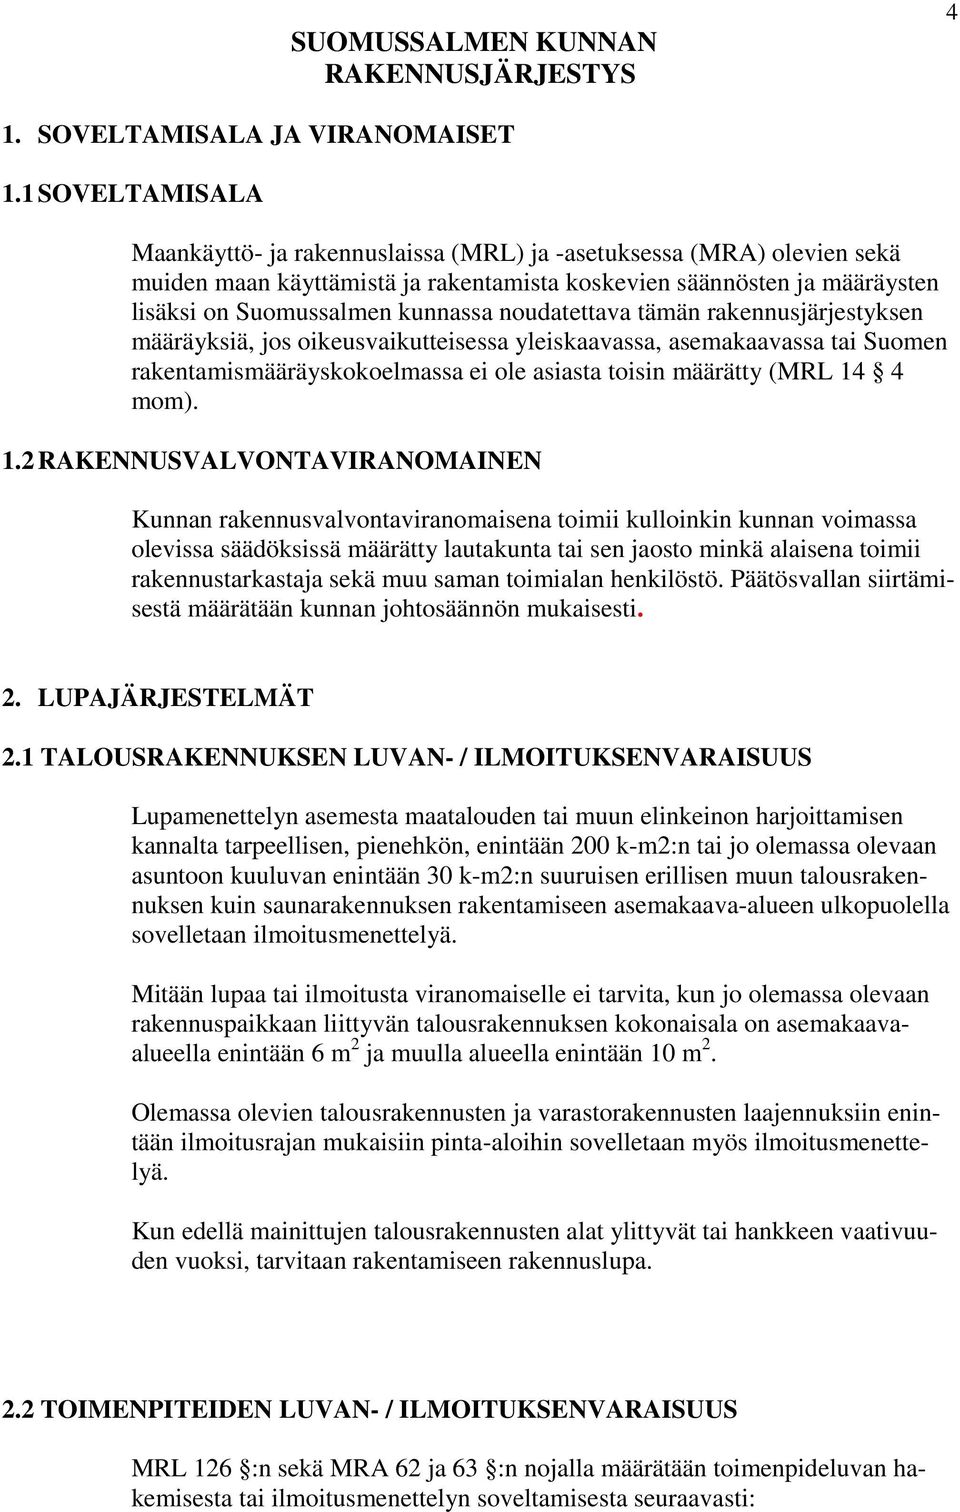 noudatettava tämän rakennusjärjestyksen määräyksiä, jos oikeusvaikutteisessa yleiskaavassa, asemakaavassa tai Suomen rakentamismääräyskokoelmassa ei ole asiasta toisin määrätty (MRL 14